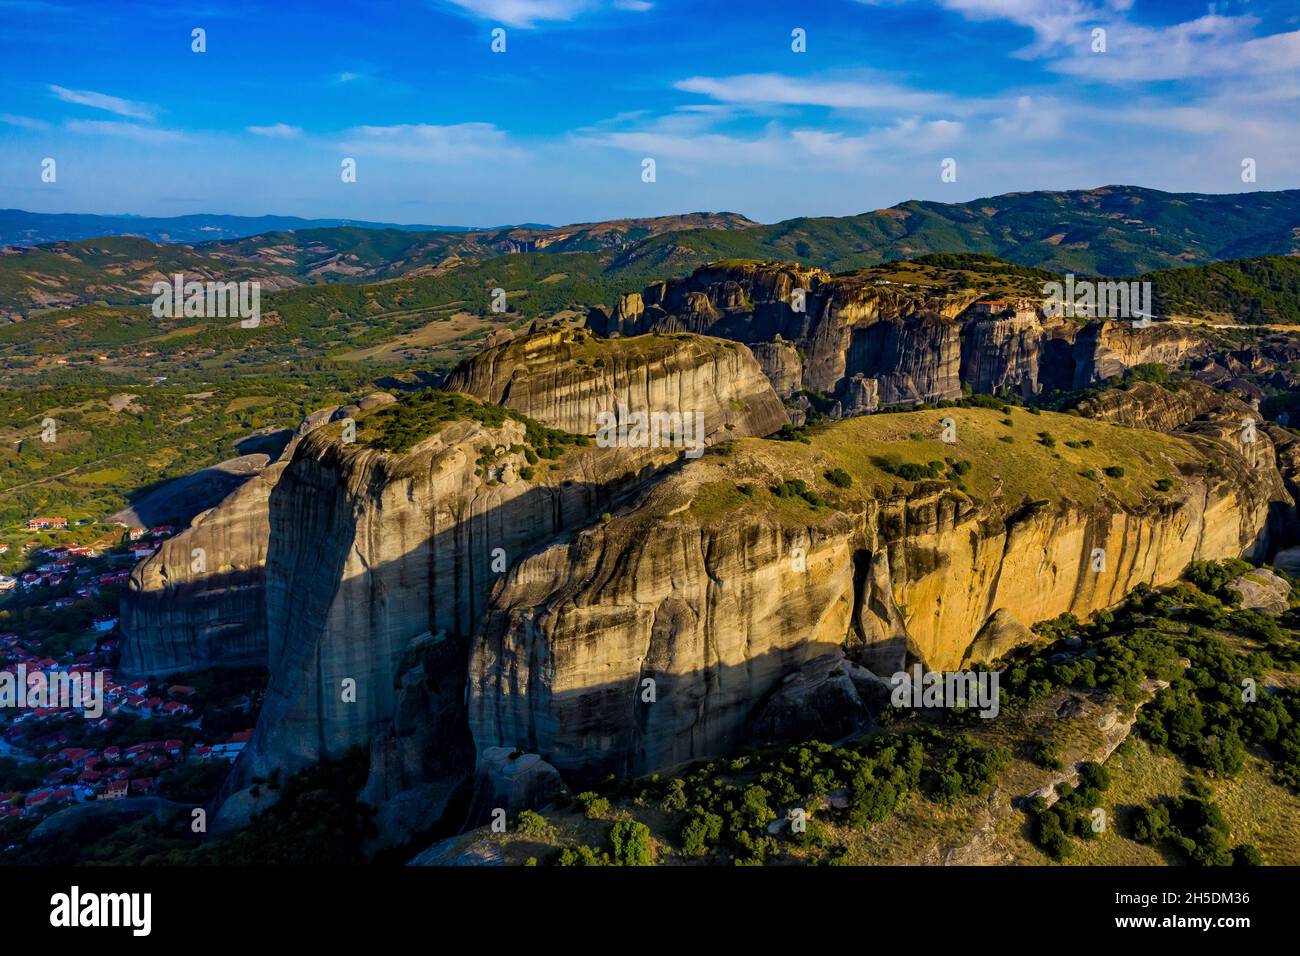 Meteora Klöster aus der Luft | Luftbilder von den Meteora Klöstern in Griechenland | Meteora monasteri in Grecia dall'alto Foto Stock